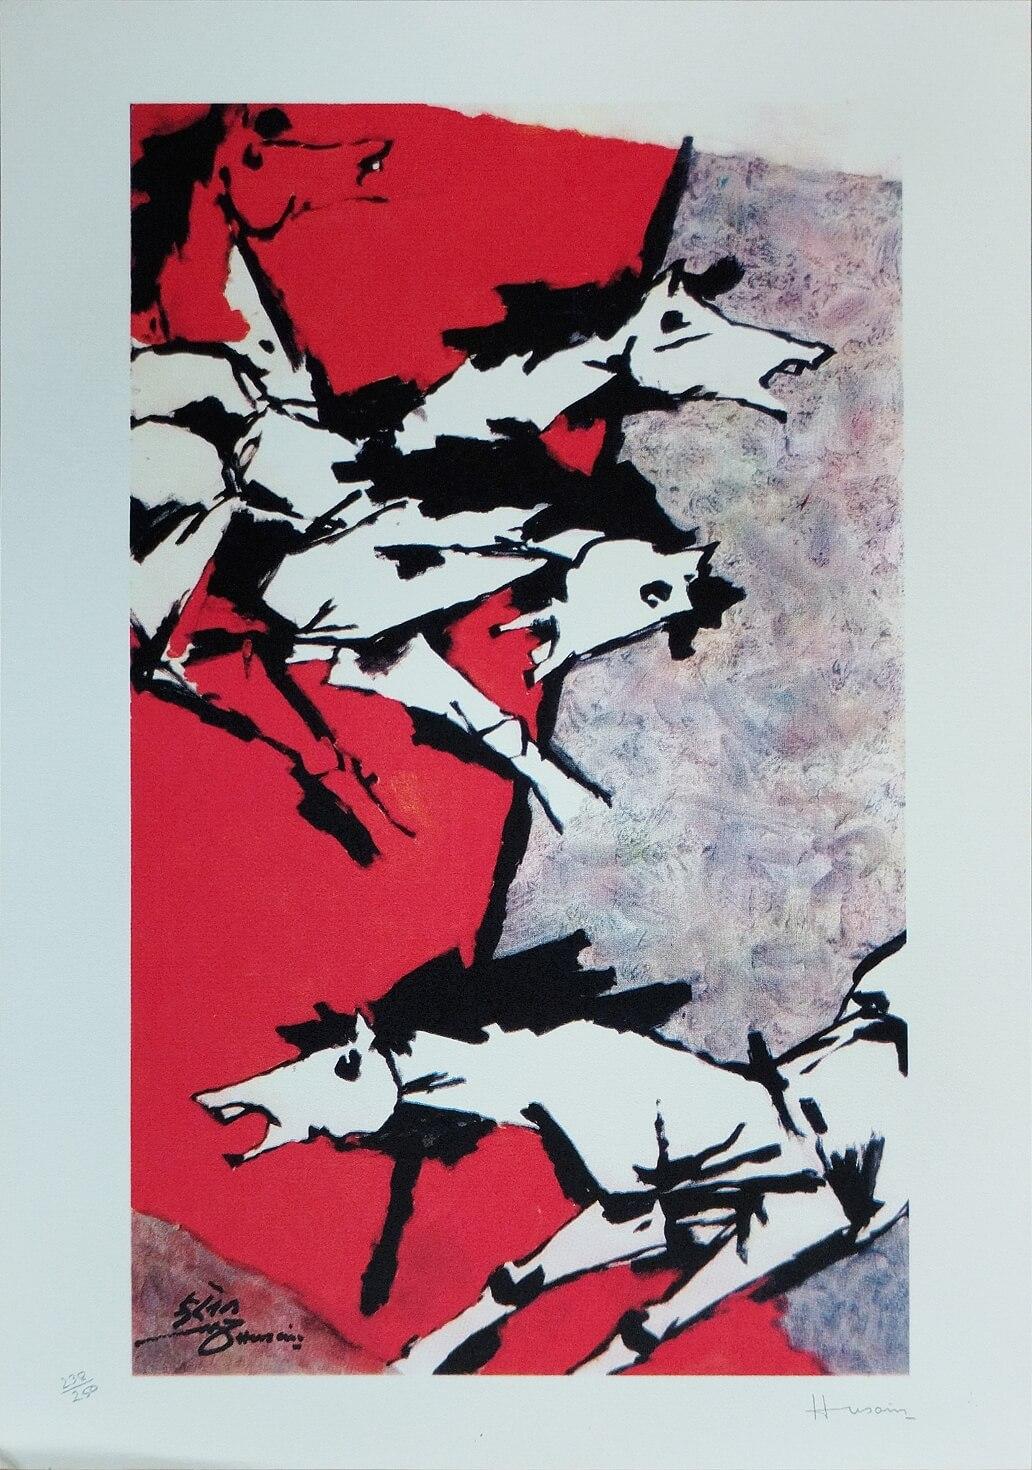 Série de chevaux, sérigraphie sur papier, noir, rouge, blanc de l'artiste moderne M.F. Husain